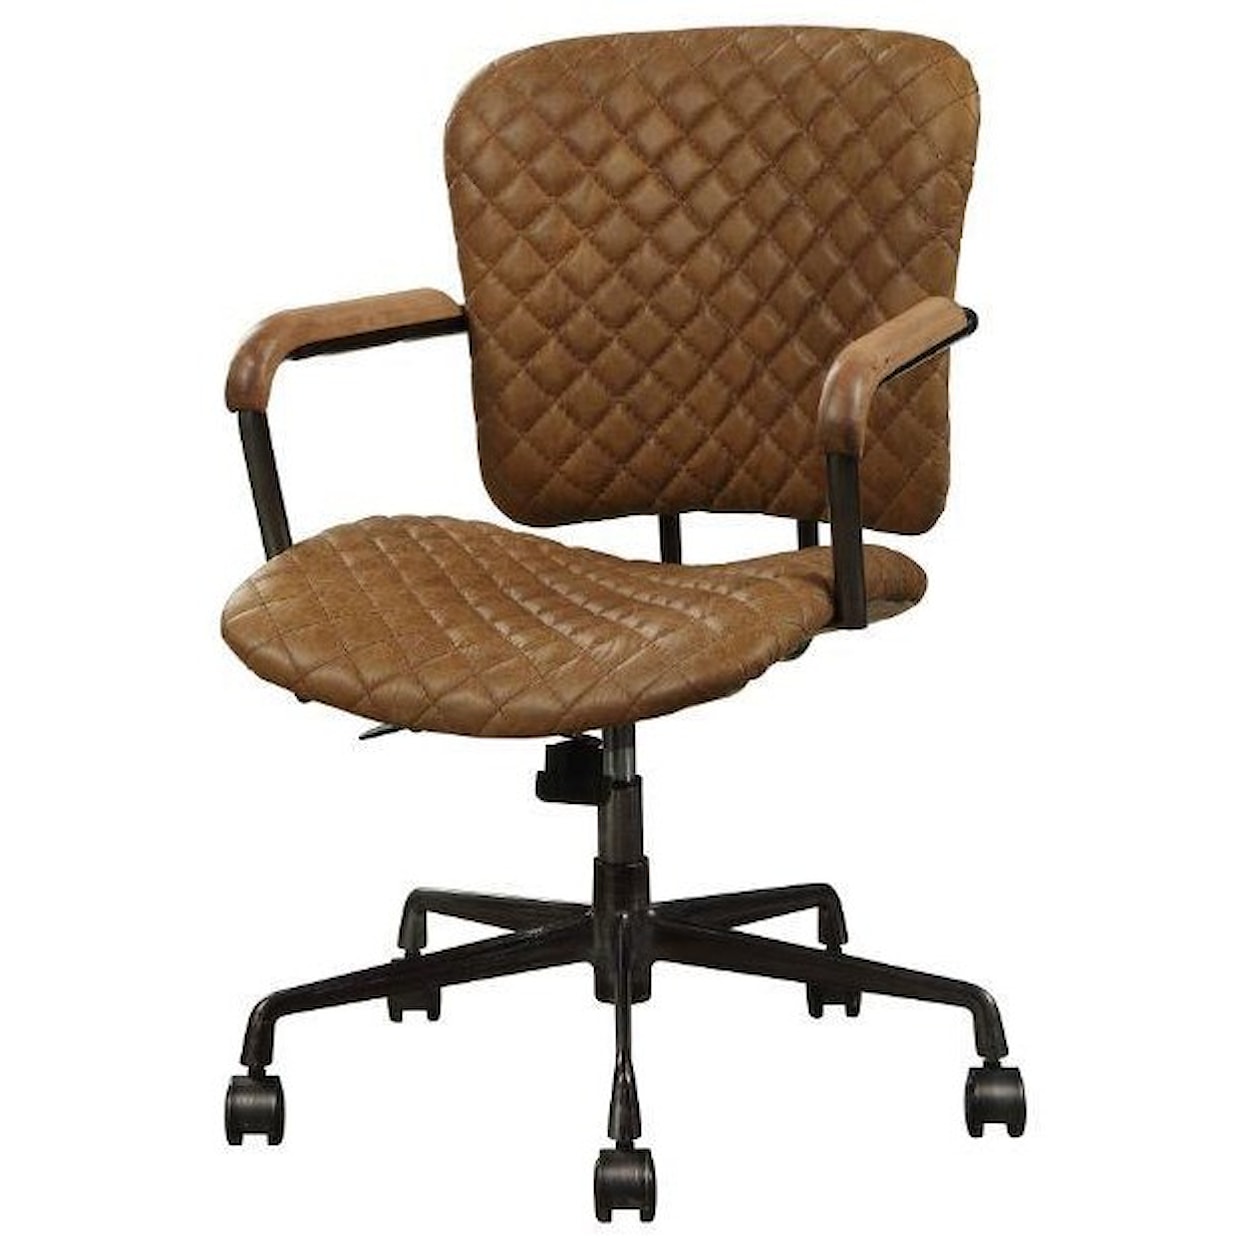 Acme Furniture Josi-433352010 Office Chair